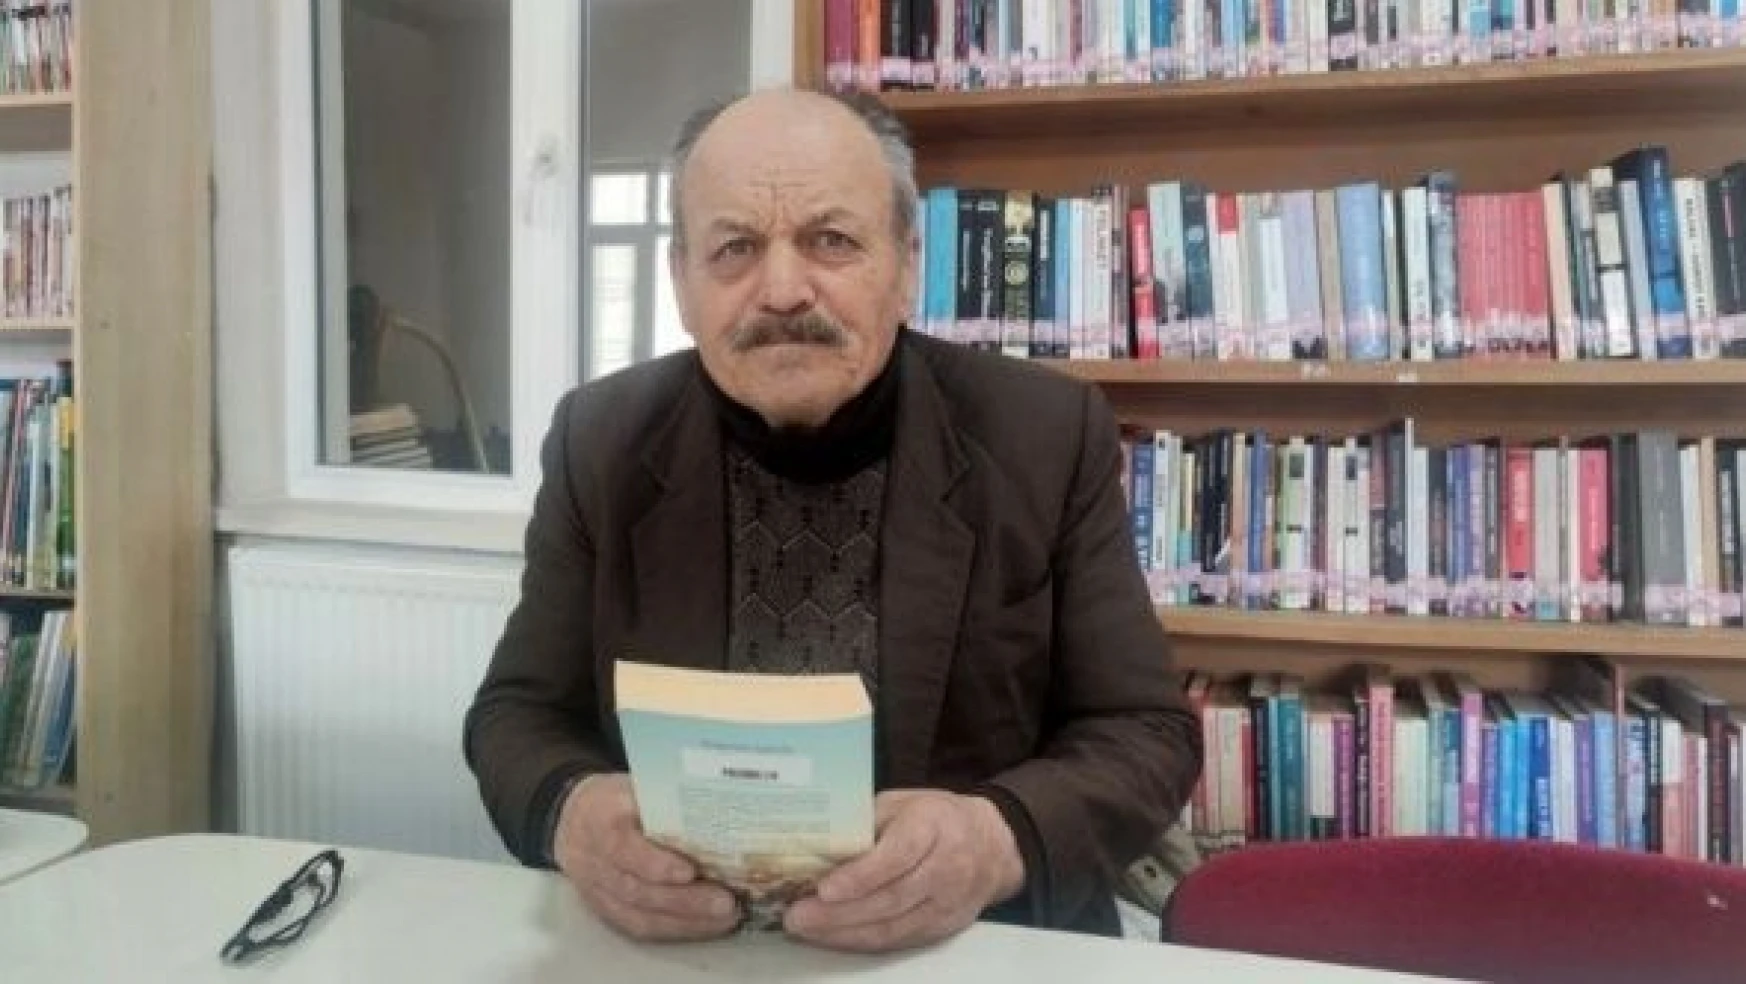 70 yaşında kitap kurdu, okumanın yaşı olmadığını gösterdi